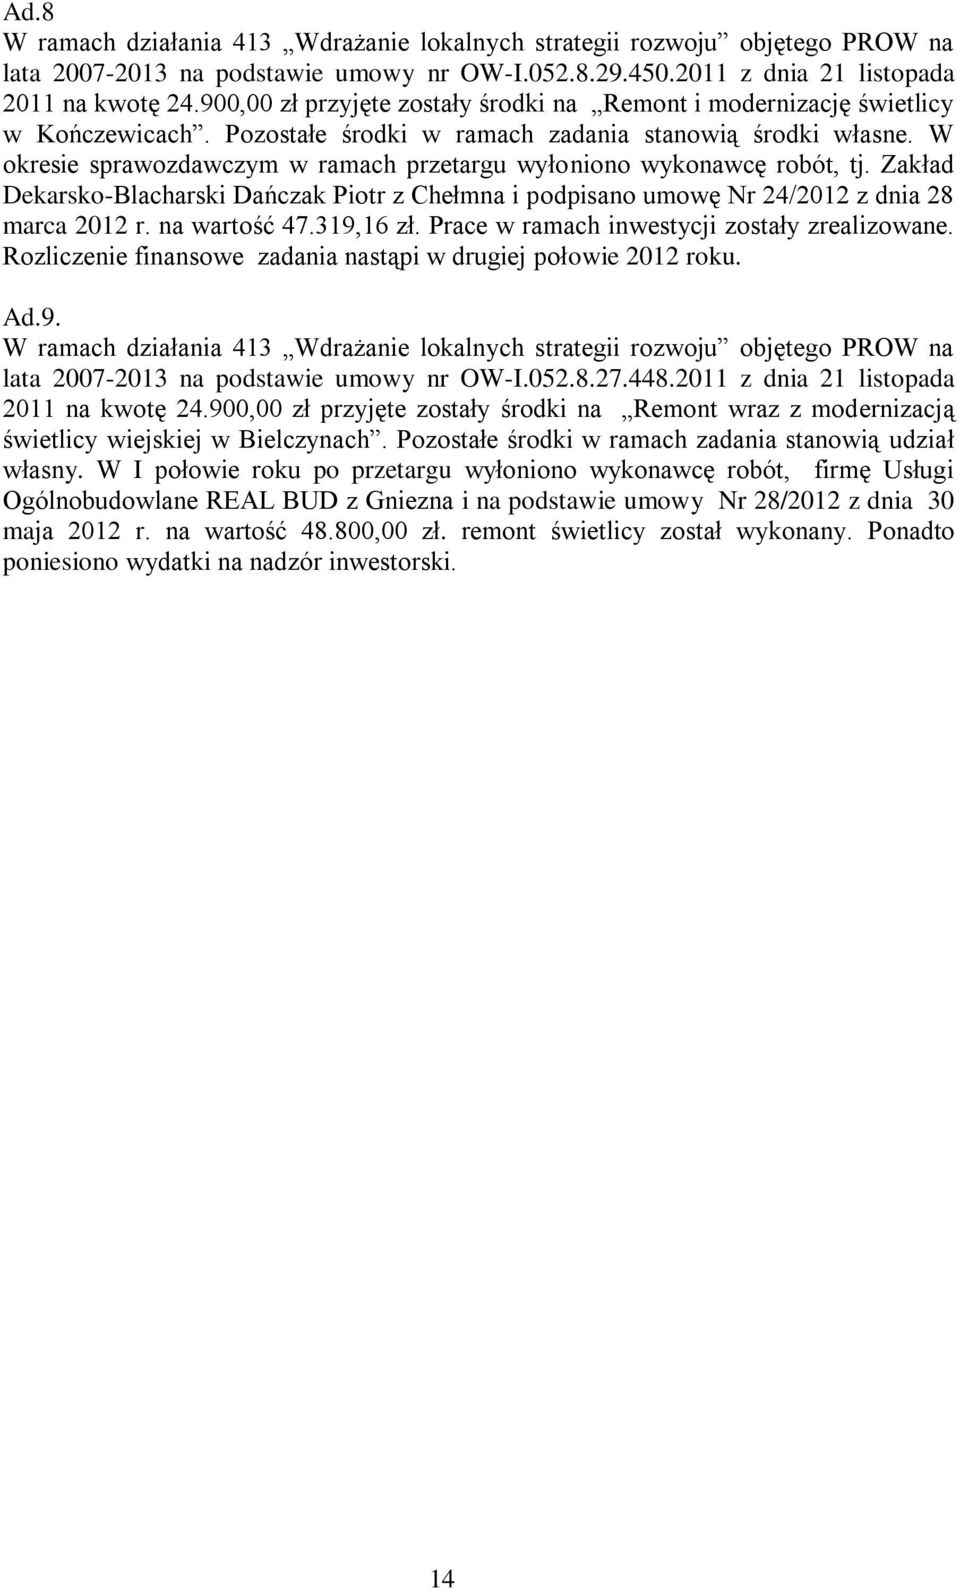 W okresie sprawozdawczym w ramach przetargu wyłoniono wykonawcę robót, tj. Zakład Dekarsko-Blacharski Dańczak Piotr z Chełmna i podpisano umowę Nr 24/2012 z dnia 28 marca 2012 r. na wartość 47.